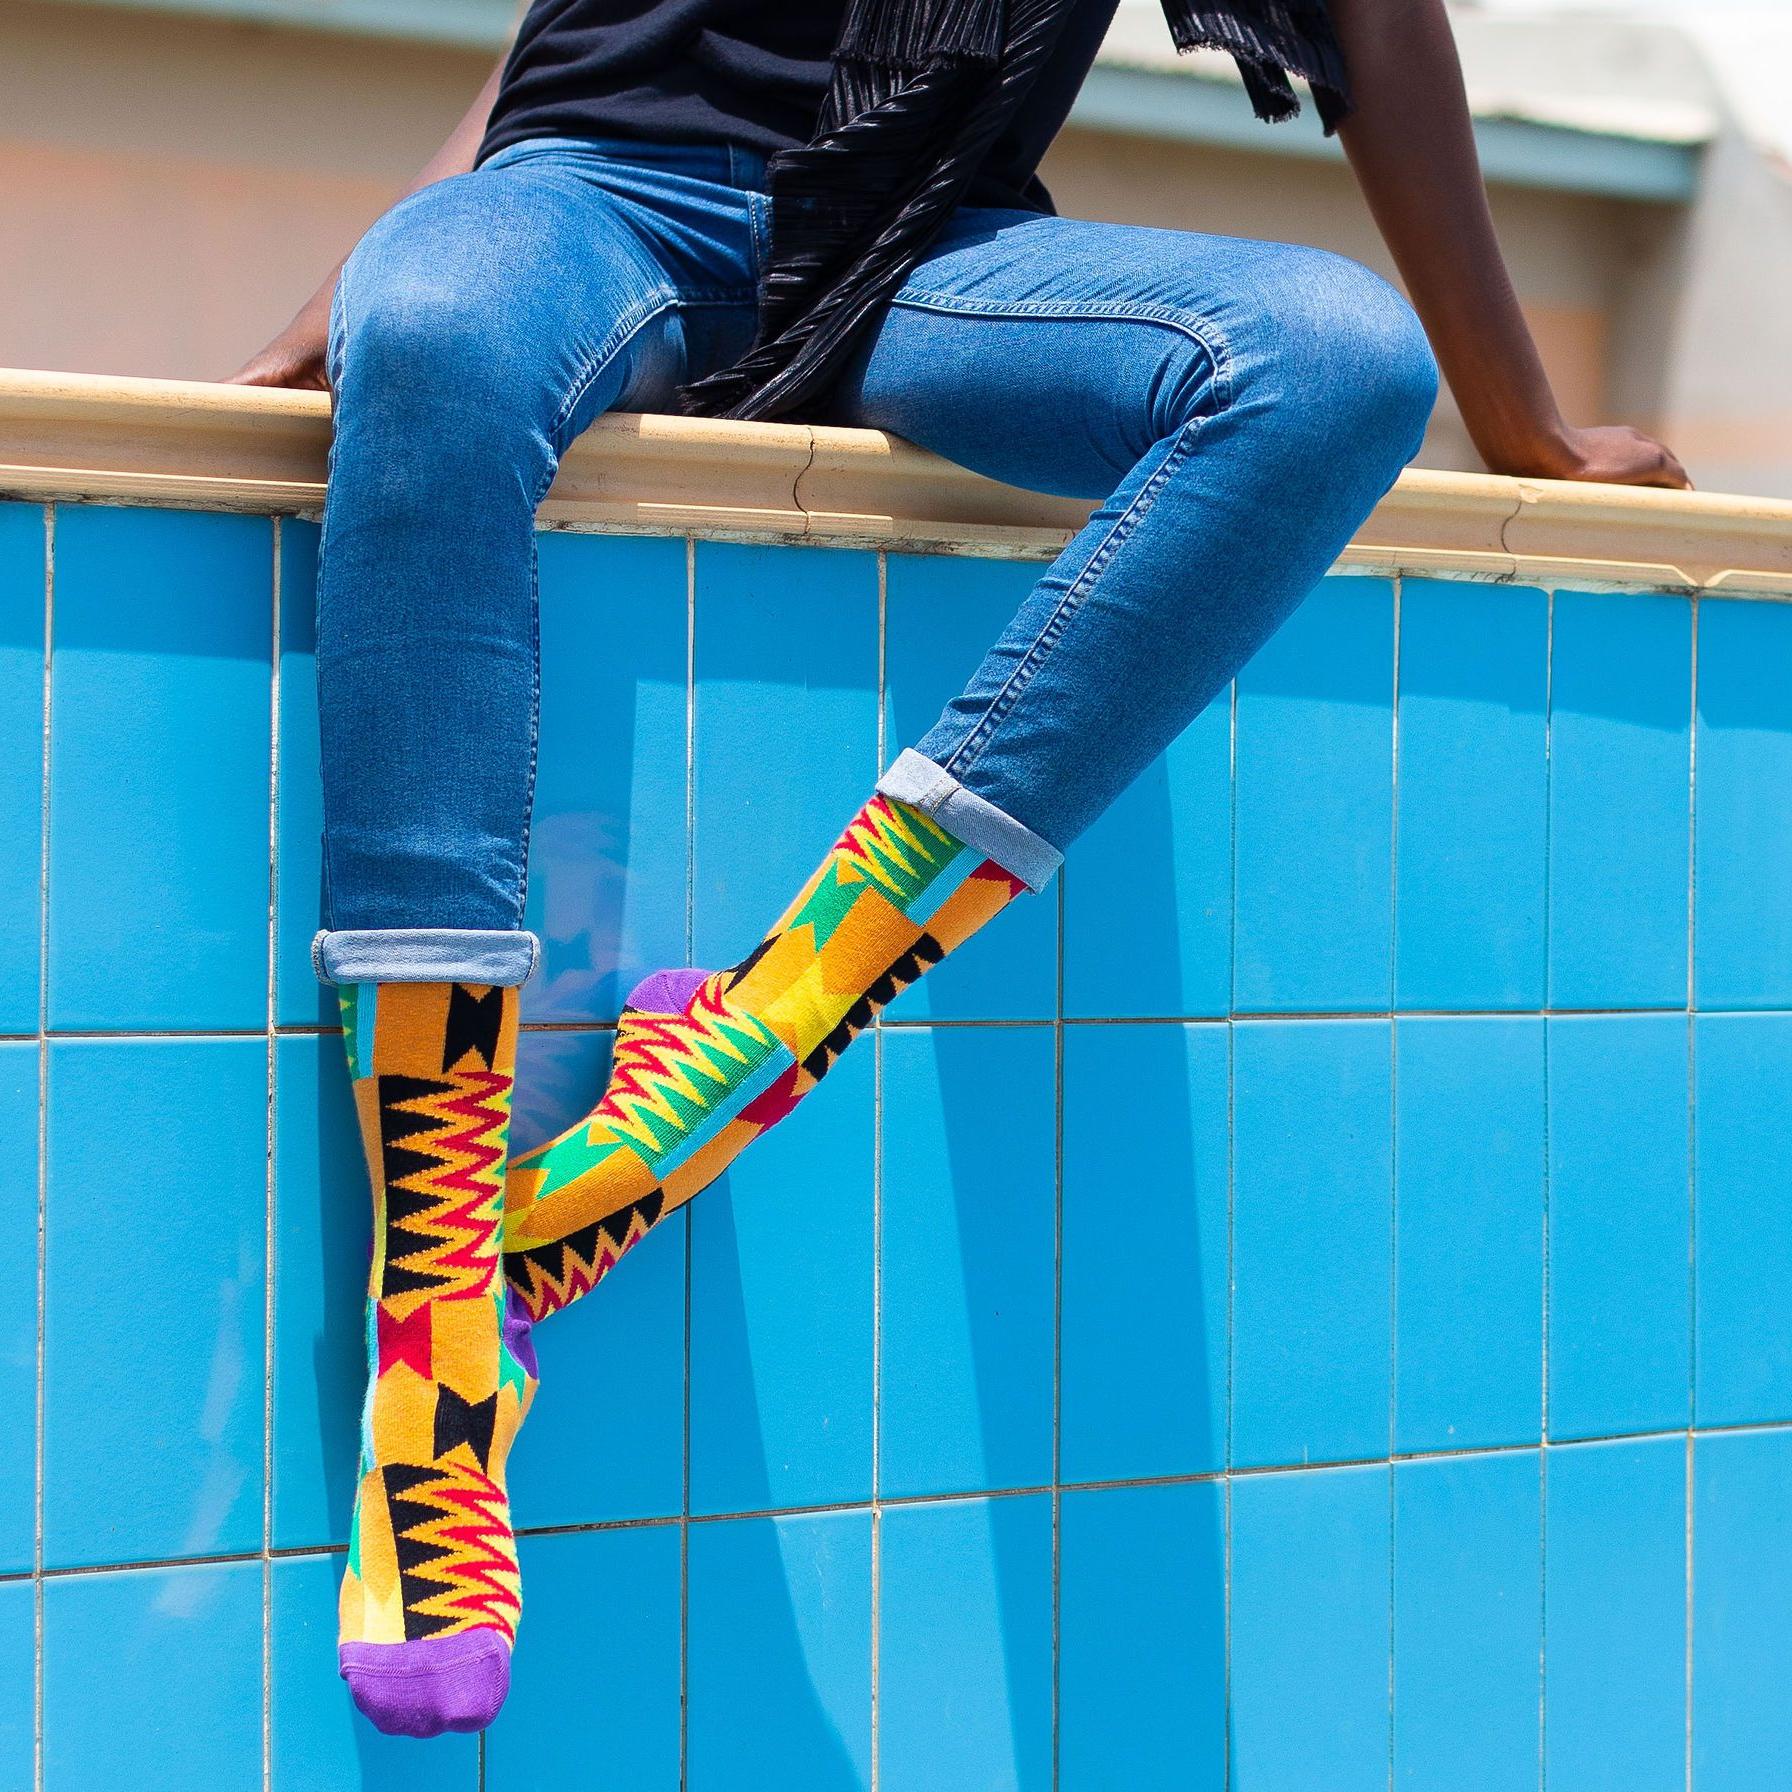 Afrisocks - African Socks